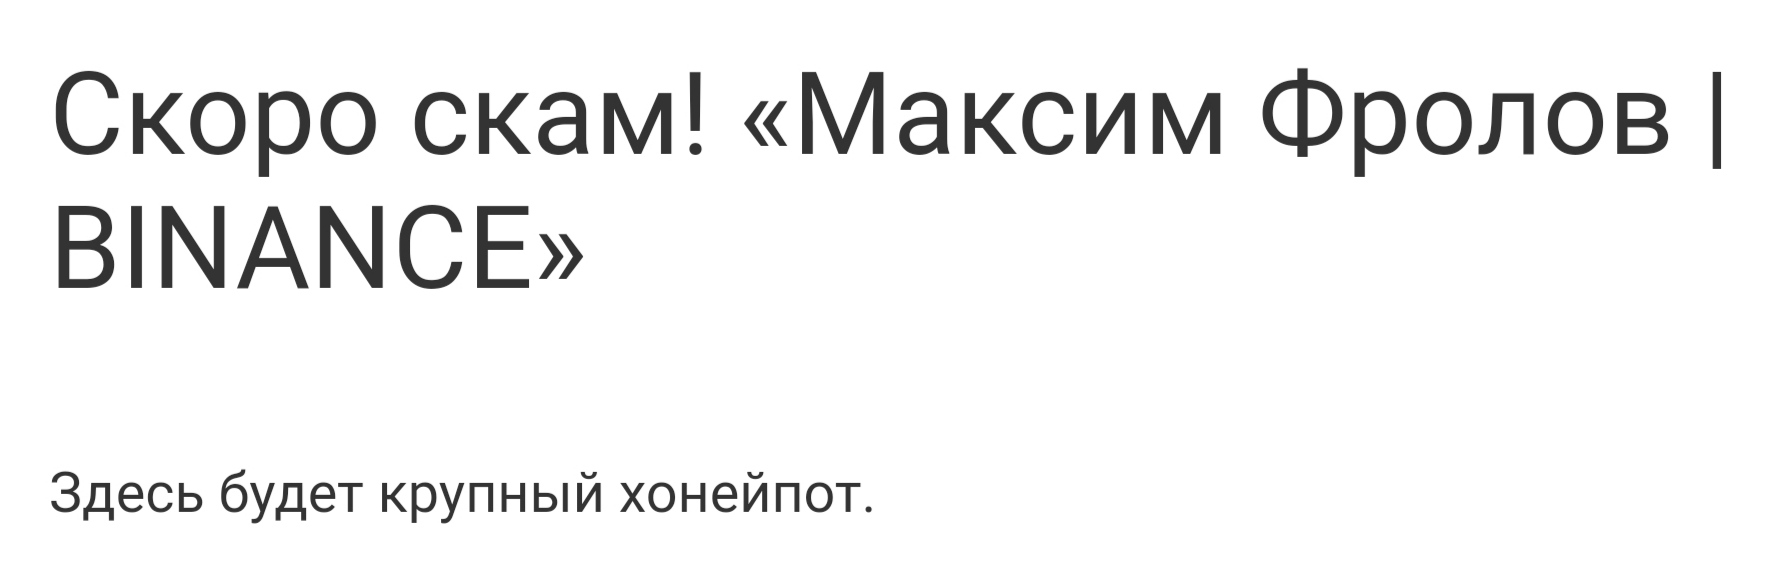 Максим Фролов - отзывы